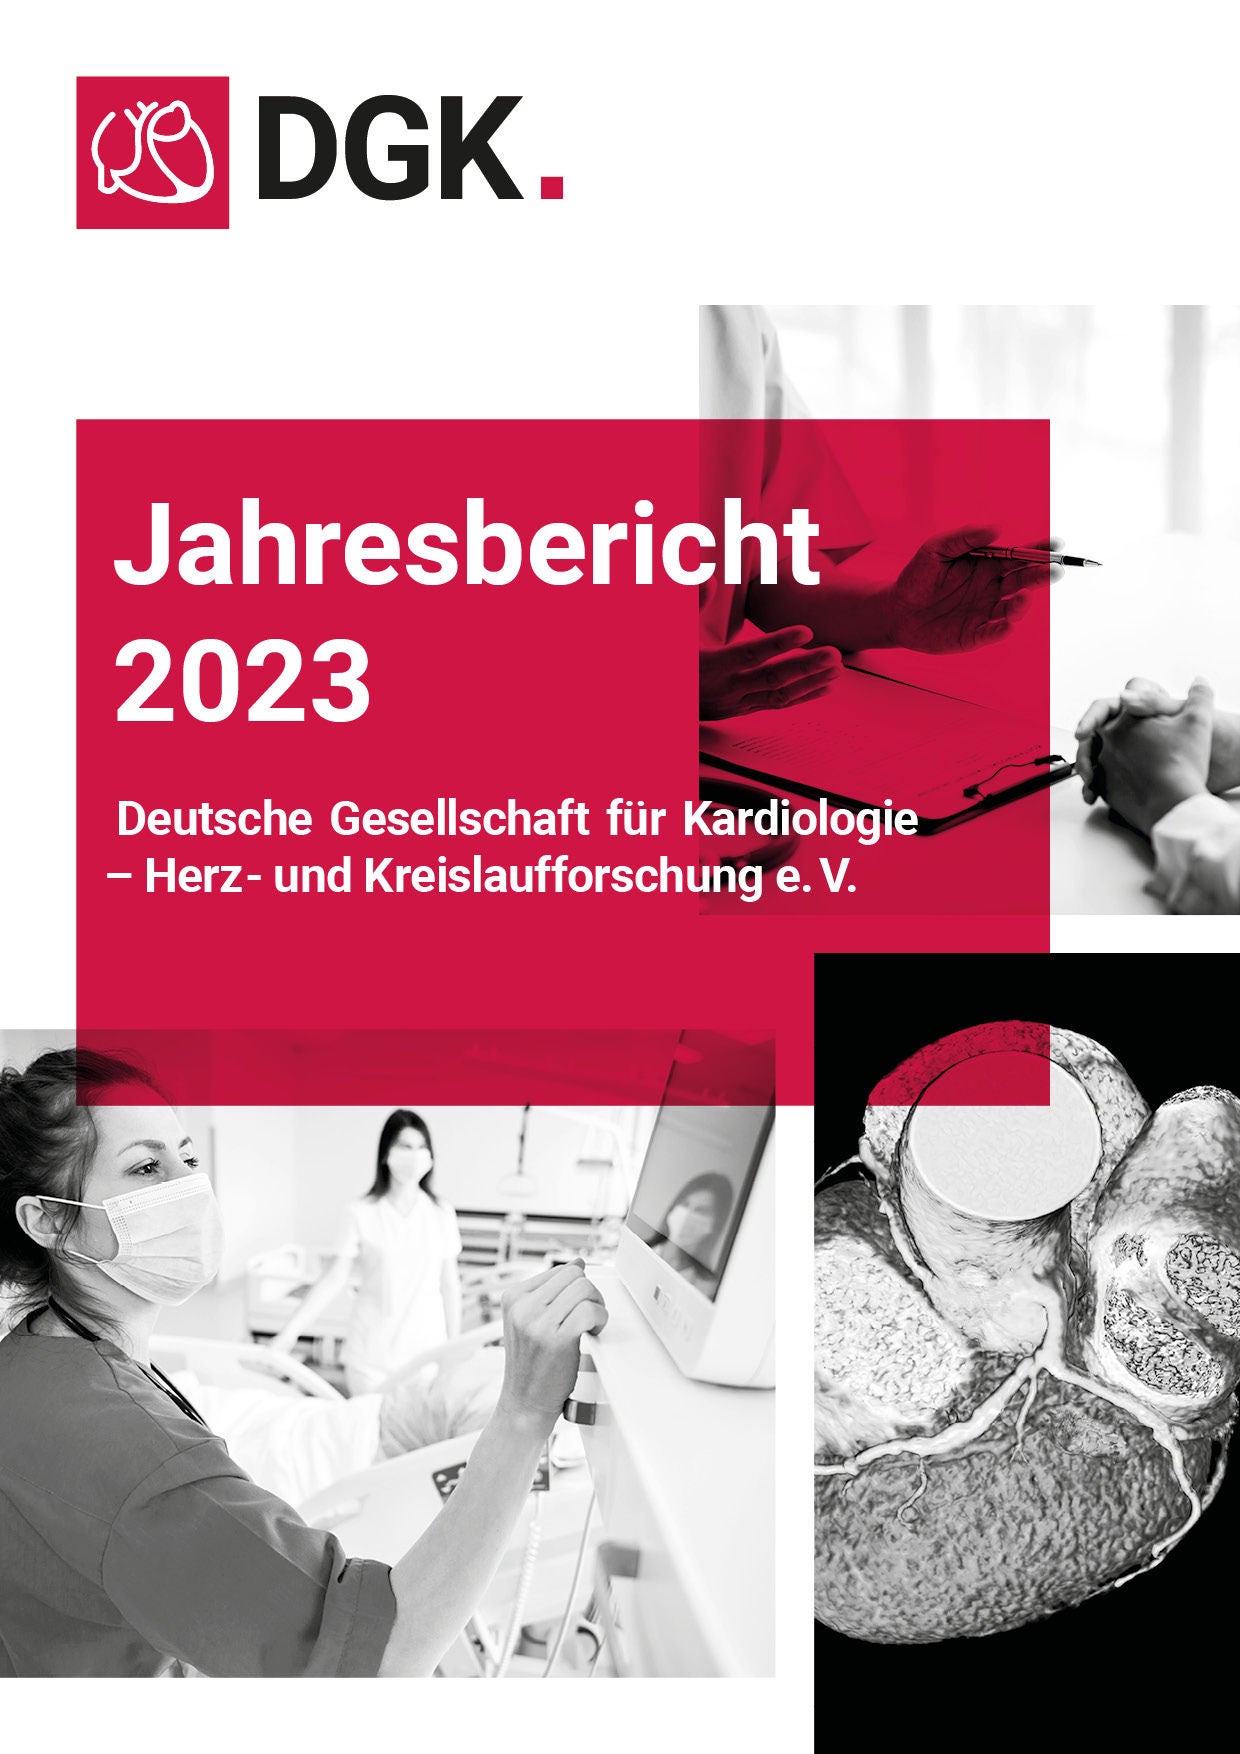 Das Titelblatt des Jahresberichts der DGK 2023